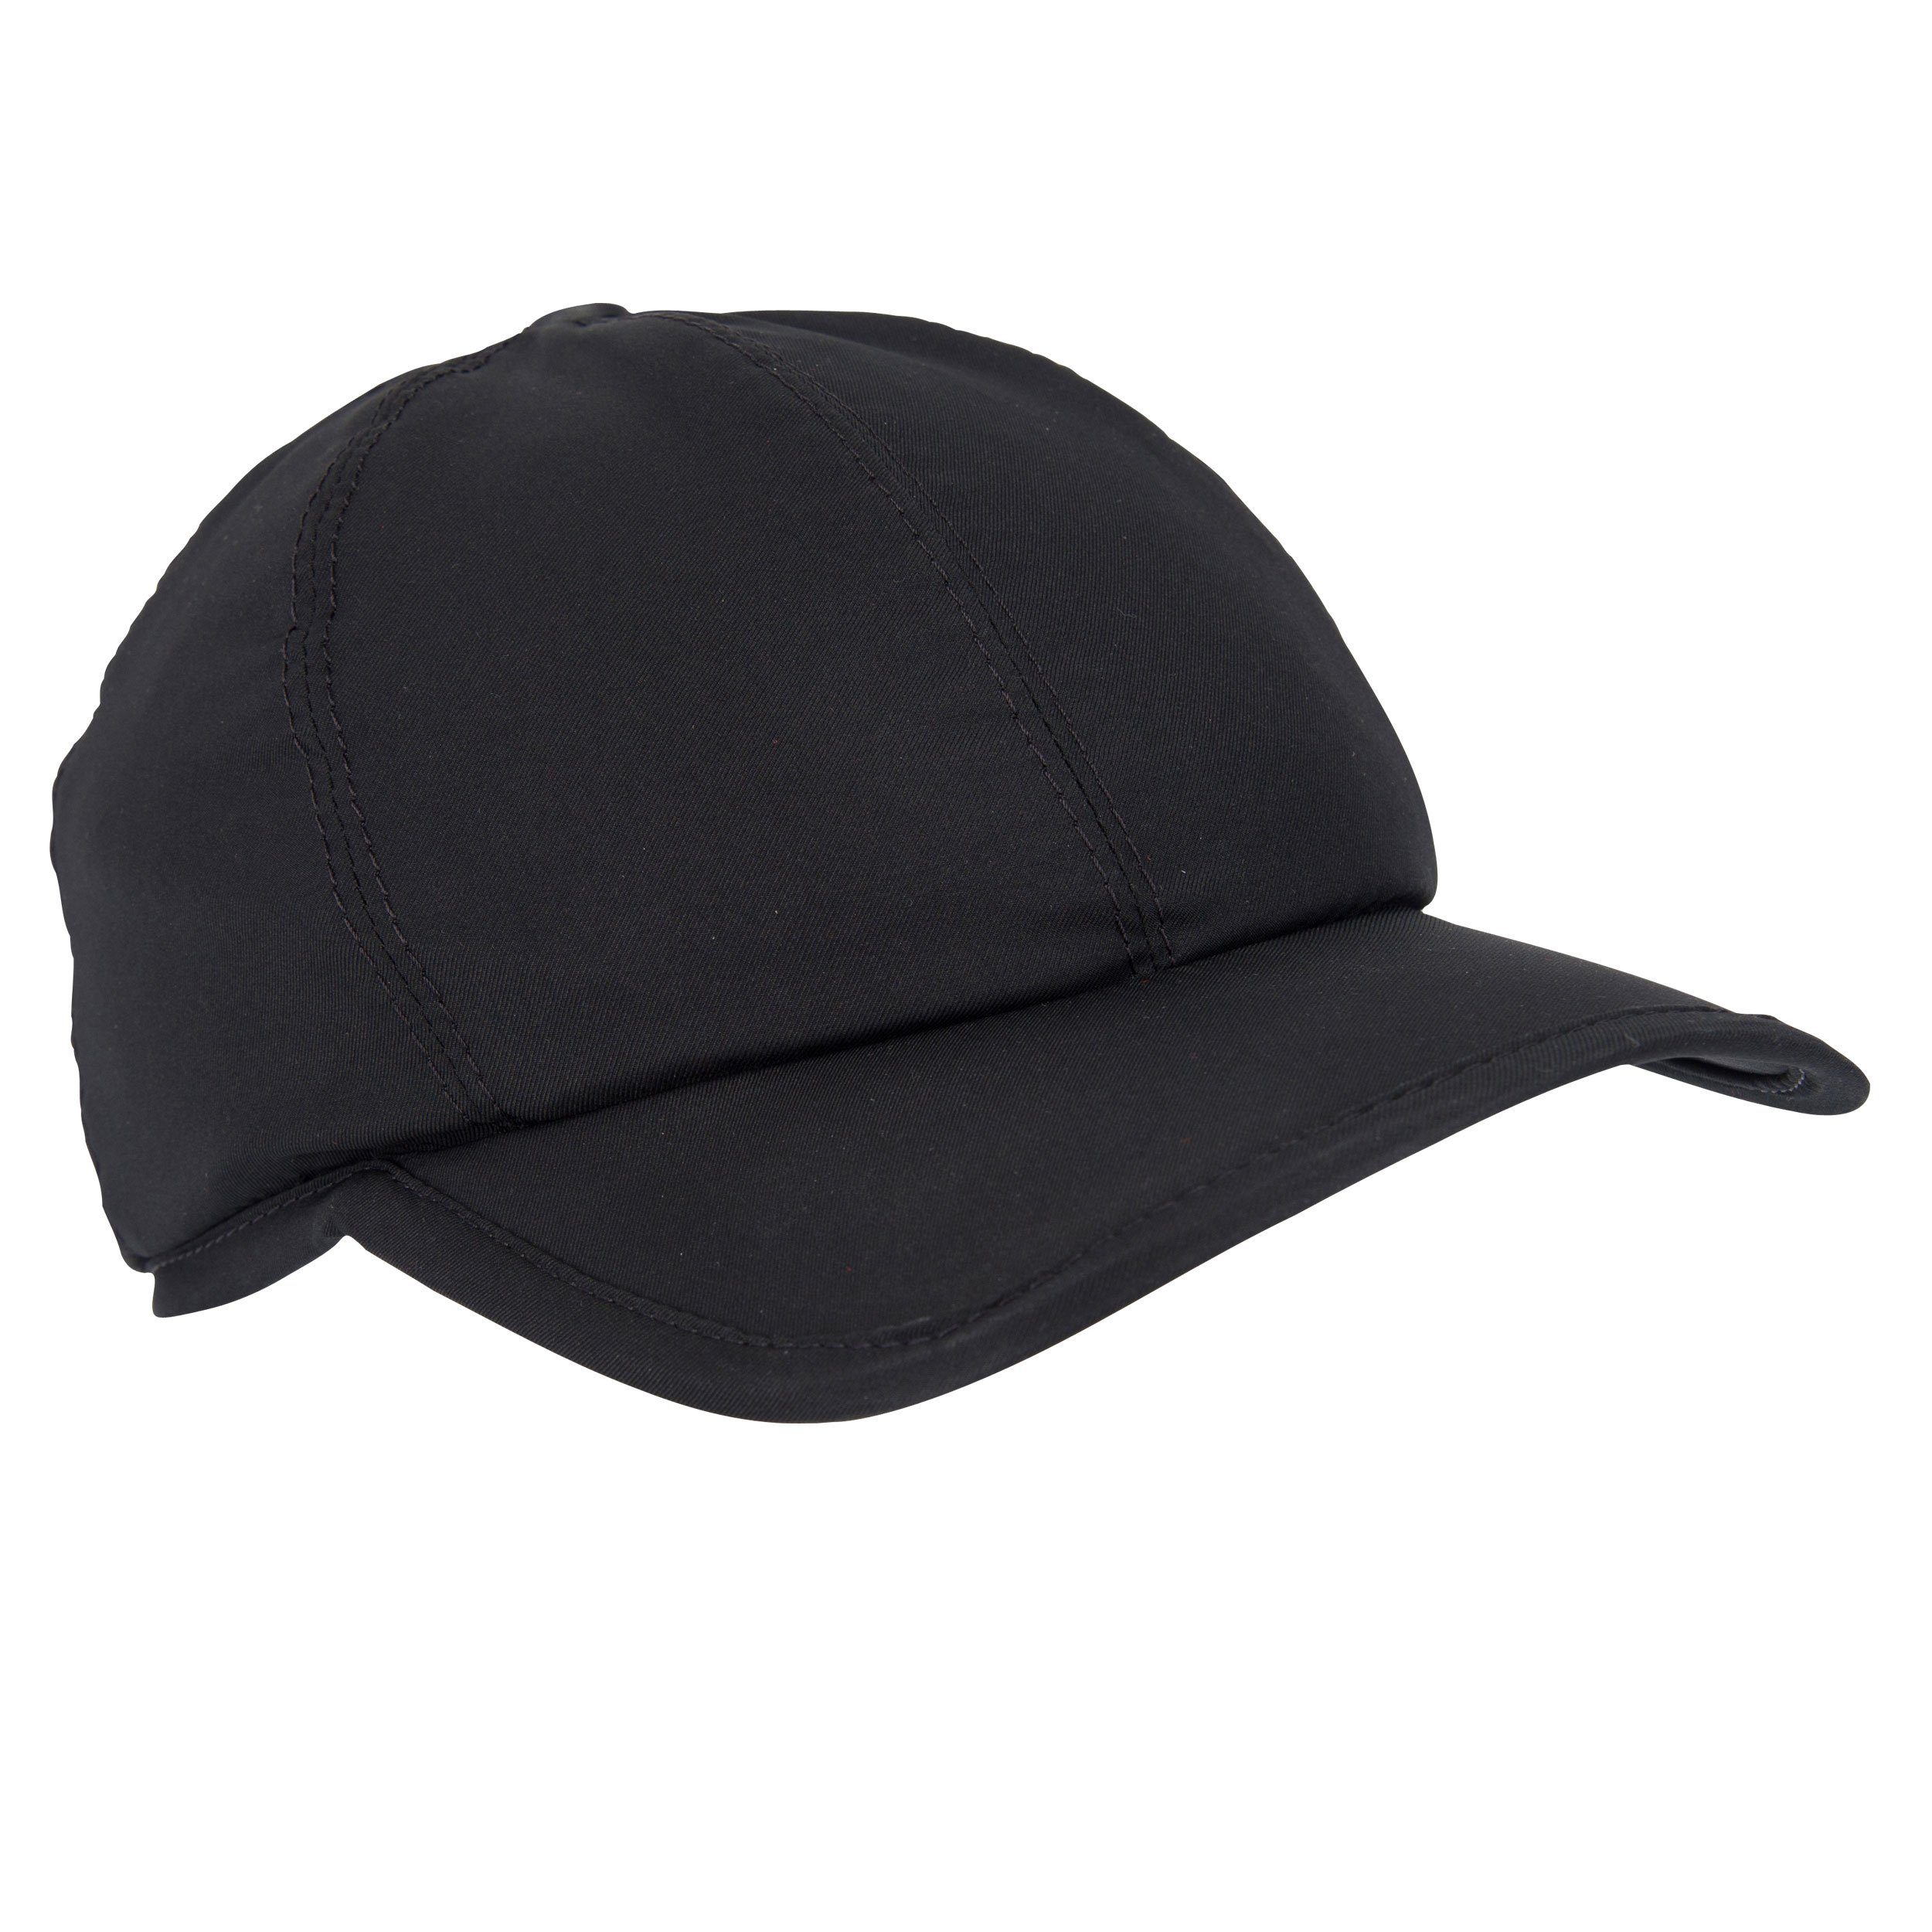 E.COOLINE Baseball Cap - aktiv kühlende Mütze - Kühlung durch Aktivierung mit Wasser Klimaanlage zum Anziehen Schwarz